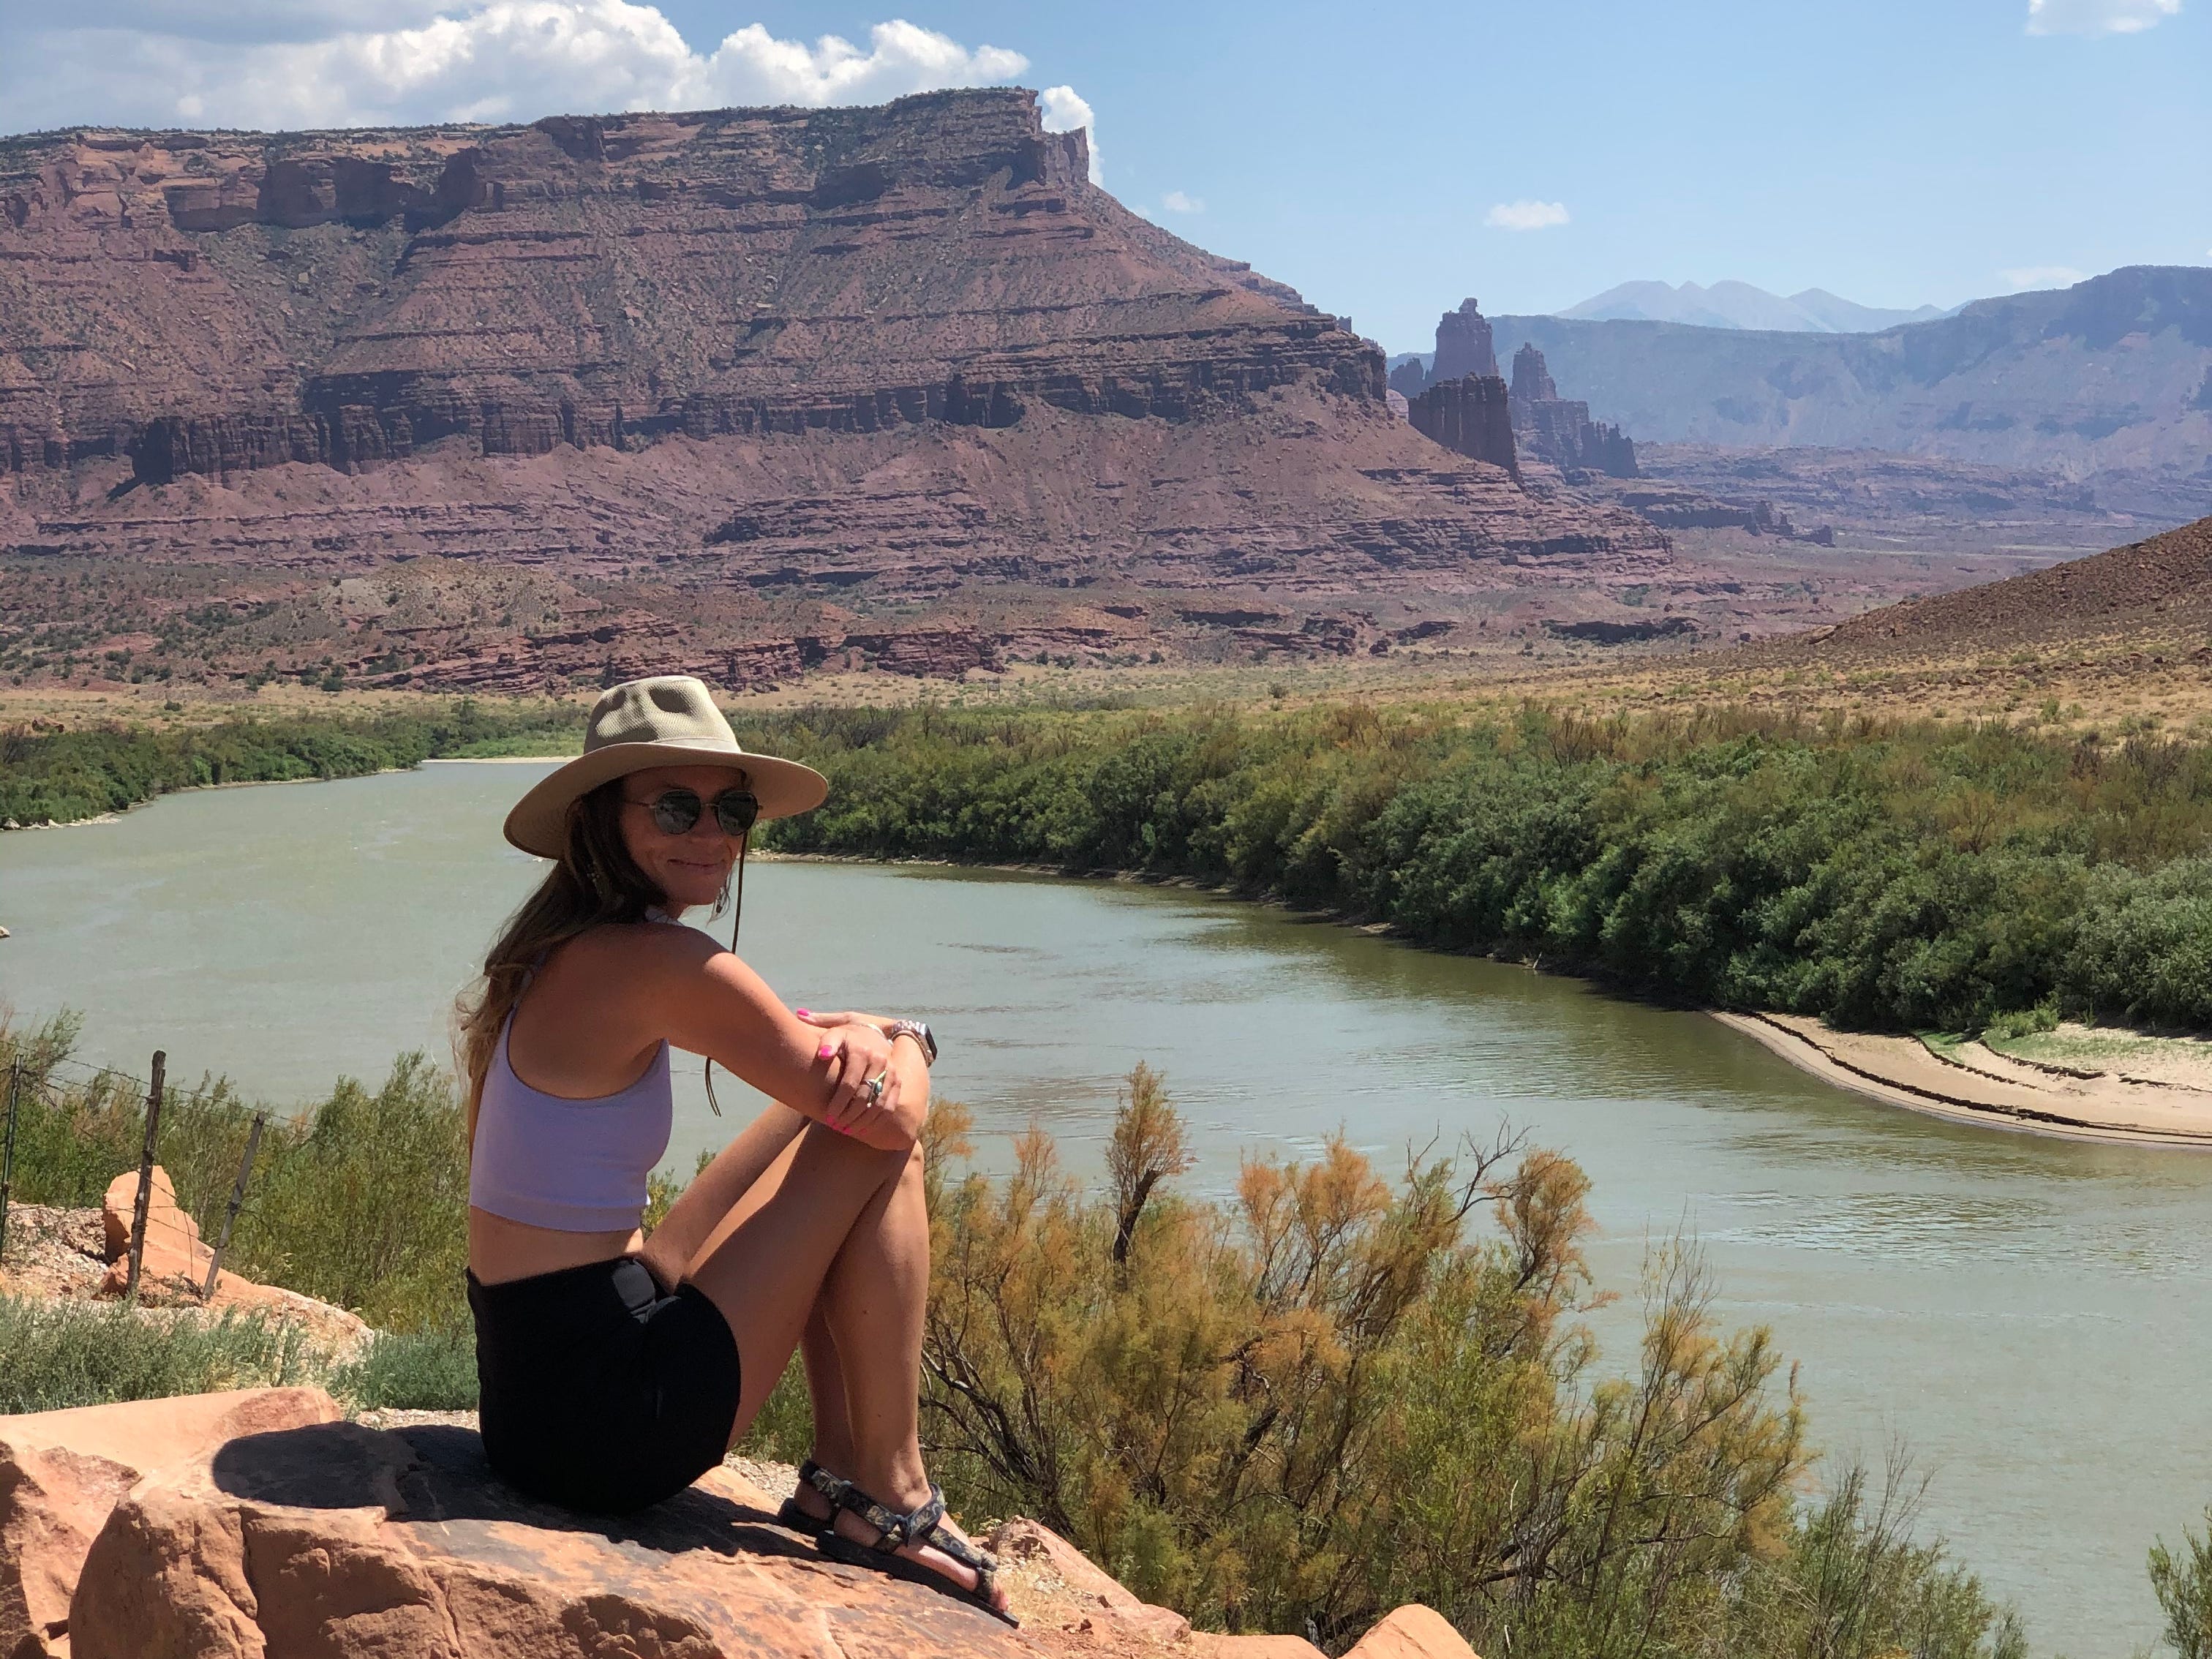 Emily sitzt in einem lila Crop-Top, schwarzen Shorts, einem beigen Hut und einer Sonnenbrille auf einem Felsen und blickt auf ein kleines Gewässer und große Felsformationen.